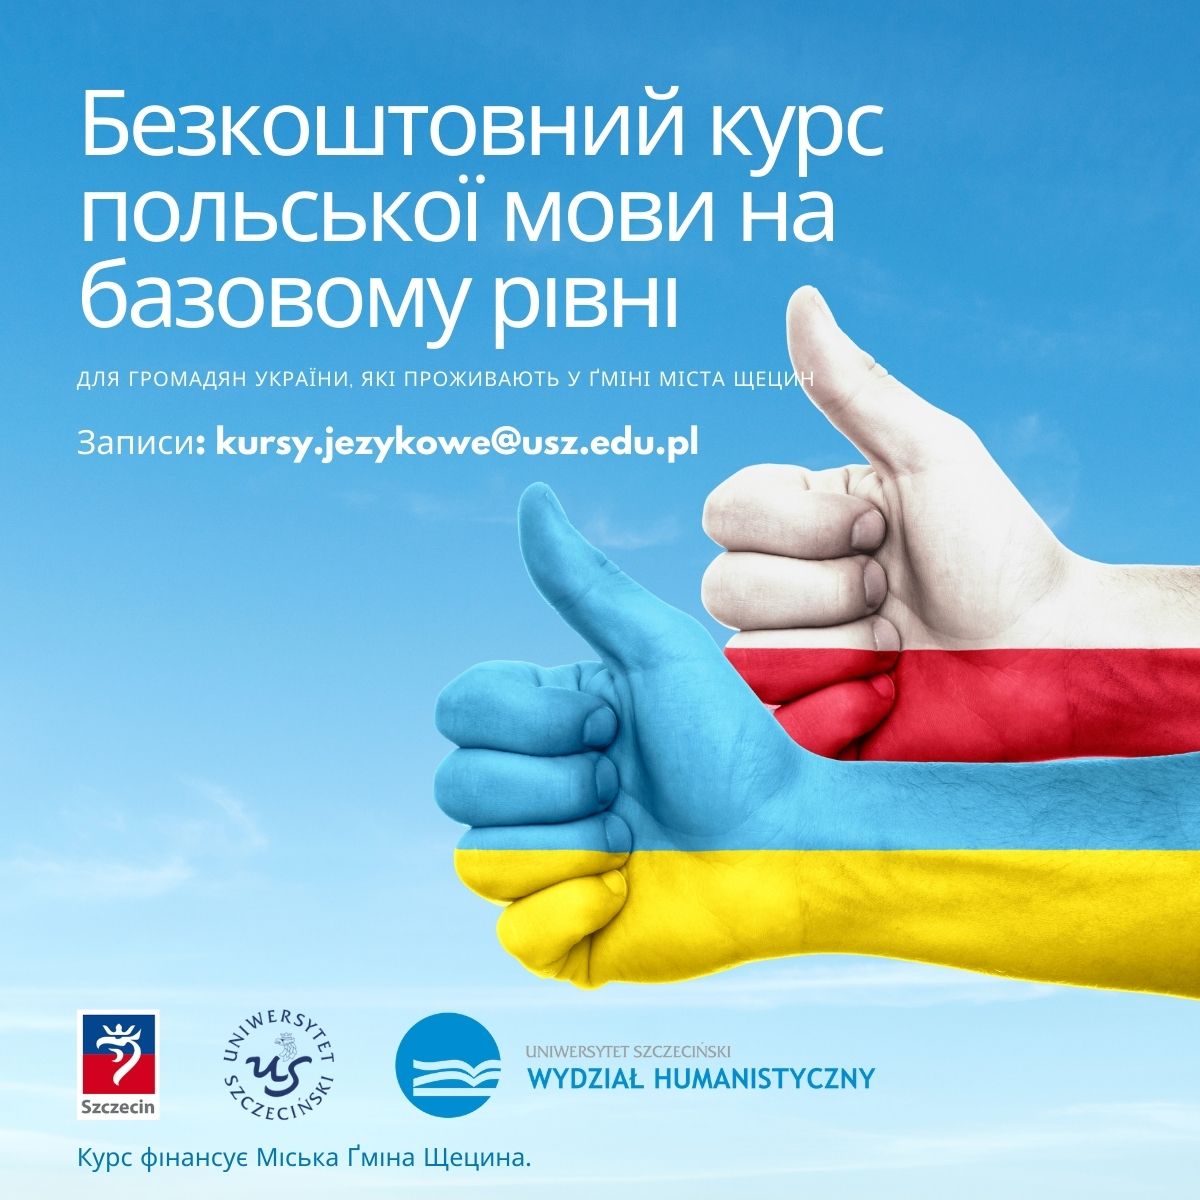 Базові курси польської мови для громадян України,  які проживають на території ґміни Щецин